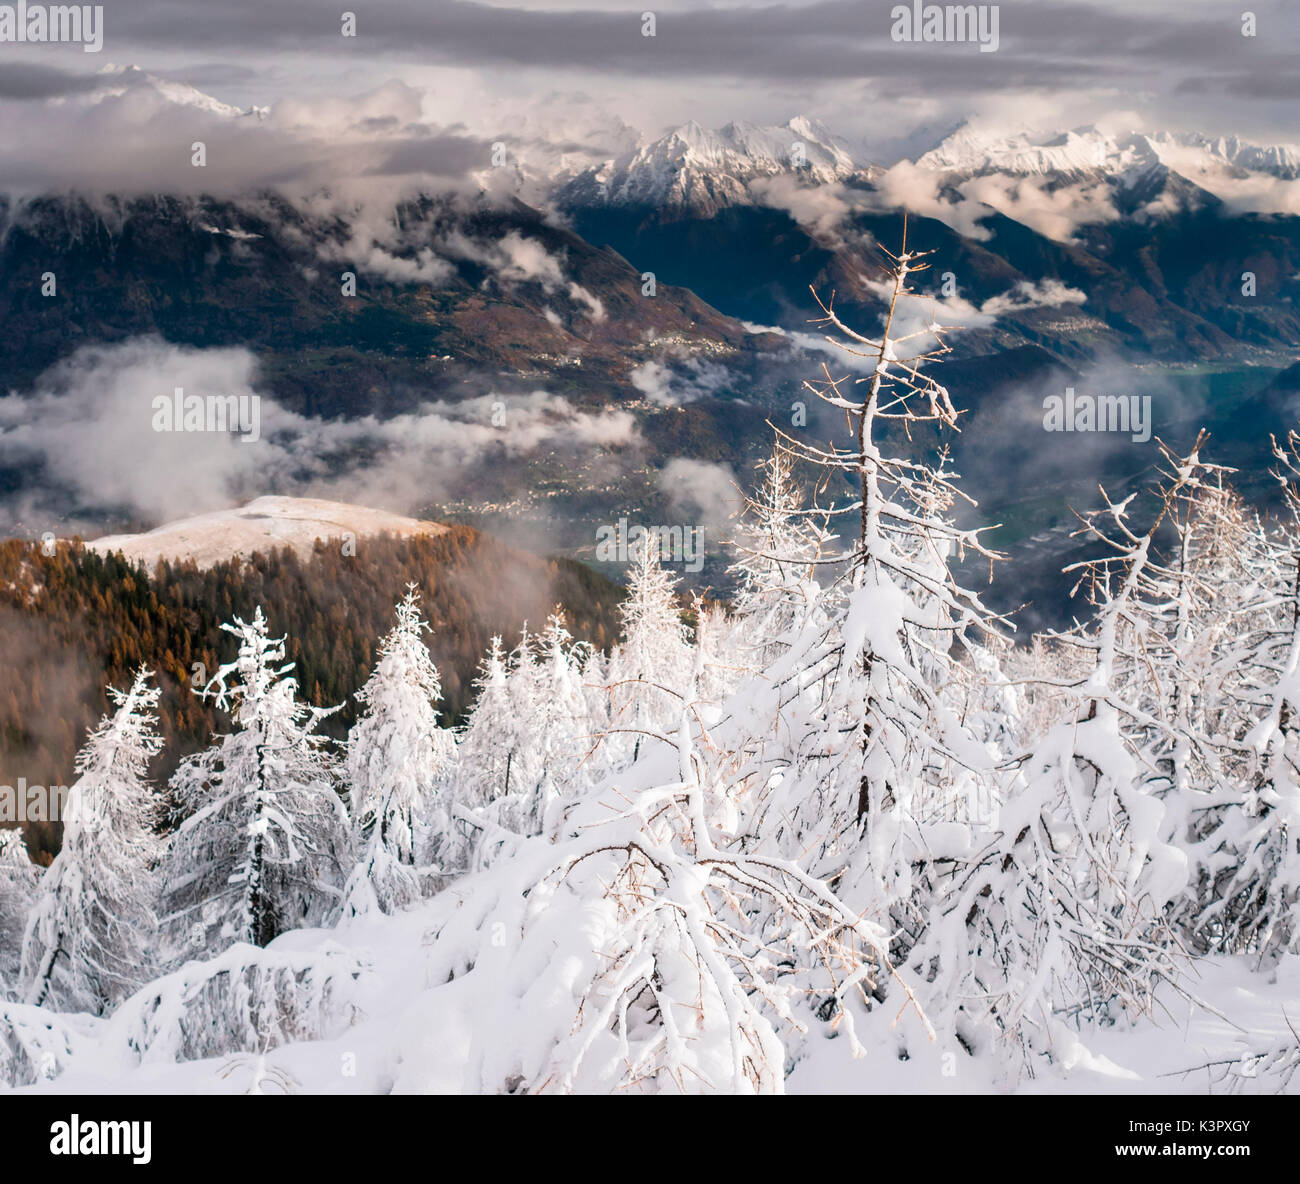 Fuertes contrastes entre larchs llenos de nieve y el fondo oscuro y el valle alpino, Valtellina, Italia Foto de stock